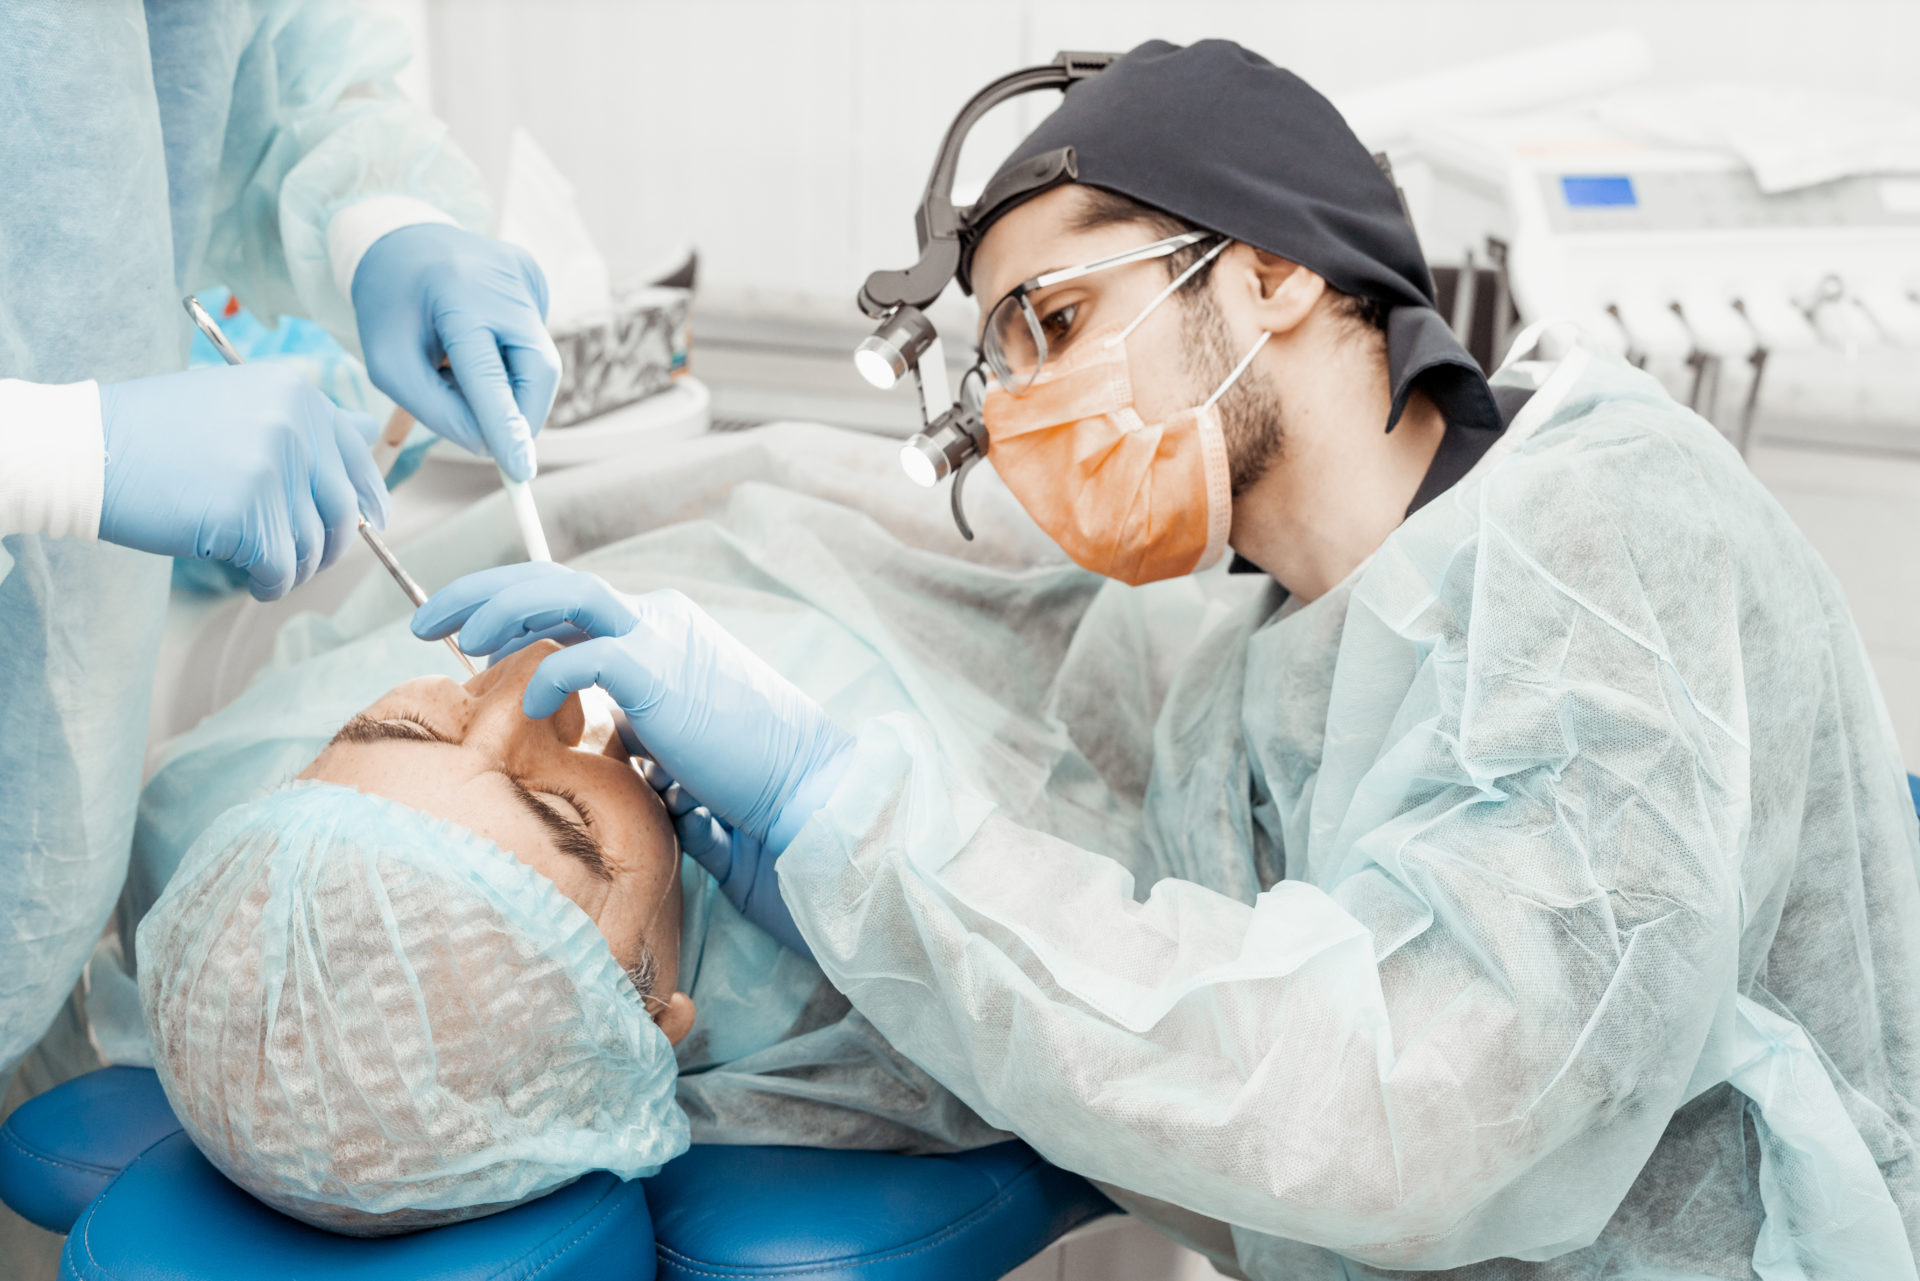 インプラントを埋入する歯科医師